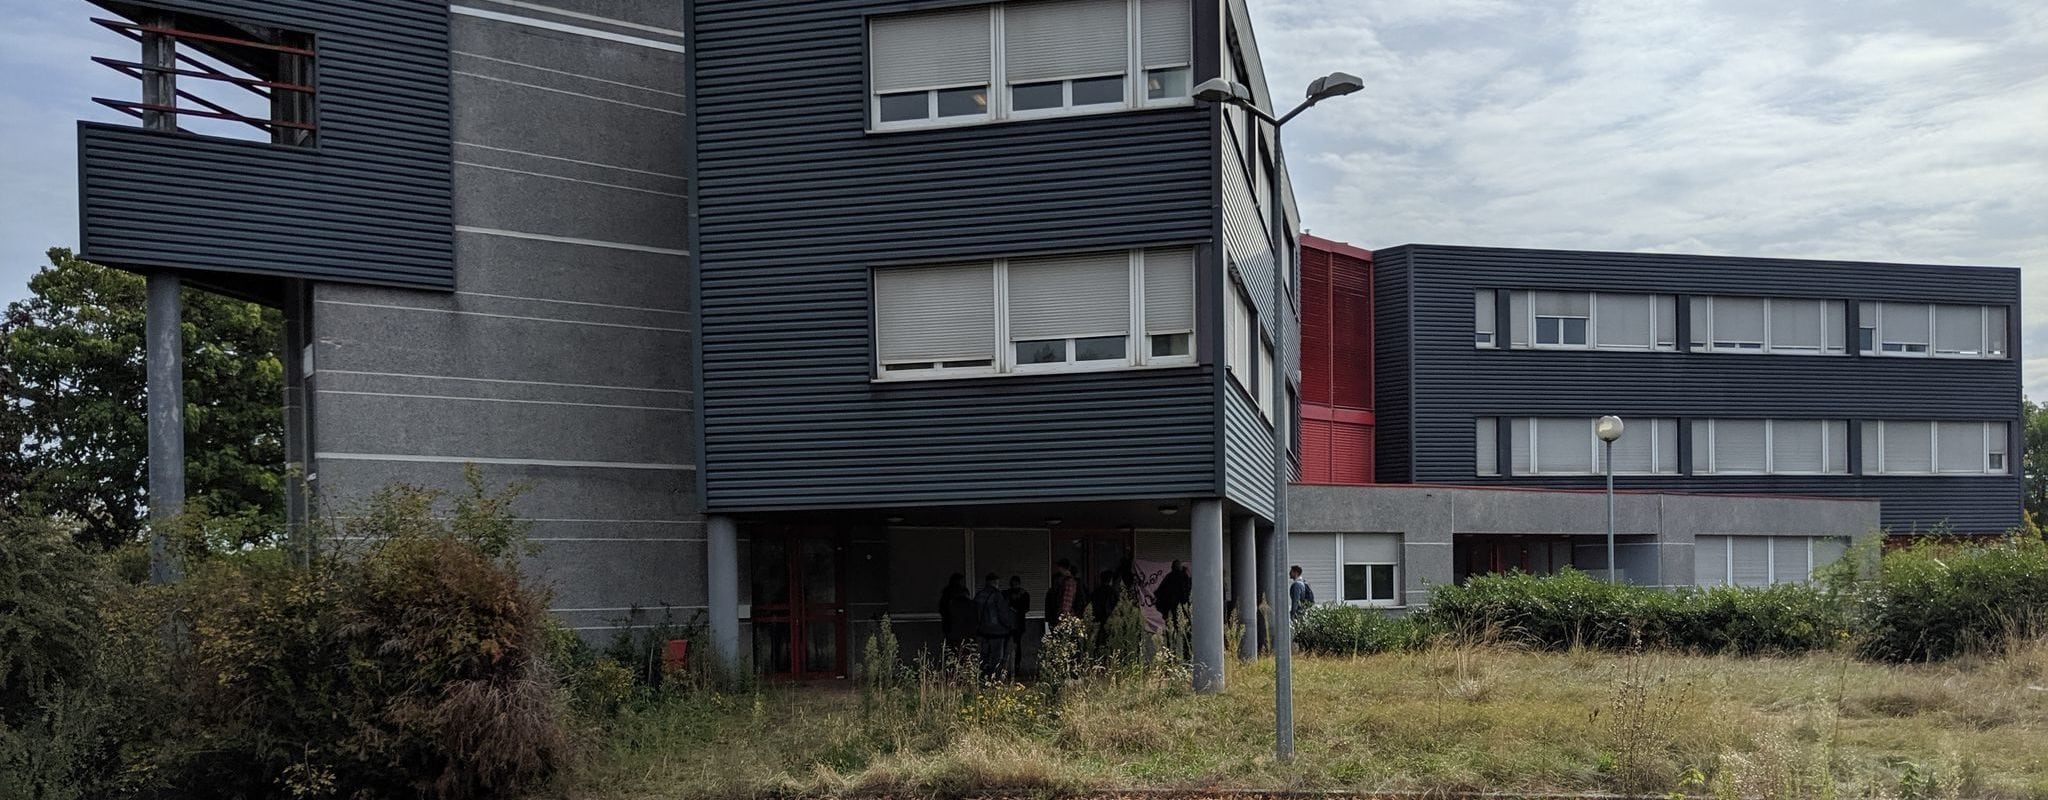 Un collectif ouvre un nouveau squat à Eckbolsheim